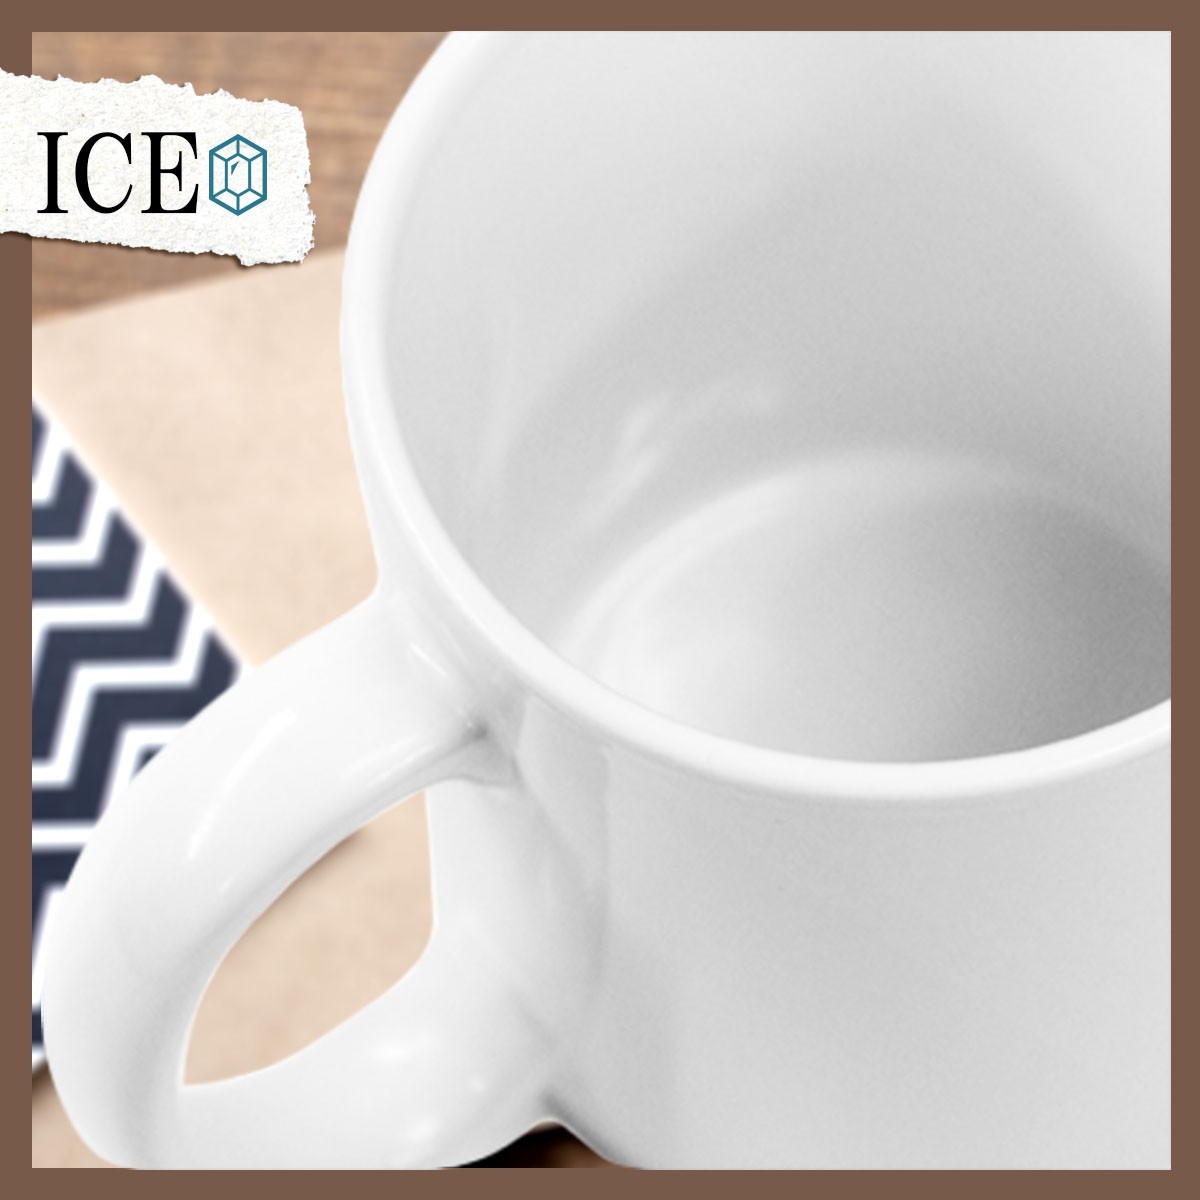 イクラ おもしろ マグカップ コップ 陶器 可愛い かわいい 白 シンプル かわいい カッコイイ シュール 面白い ジョーク ゆるい プレゼント_画像5